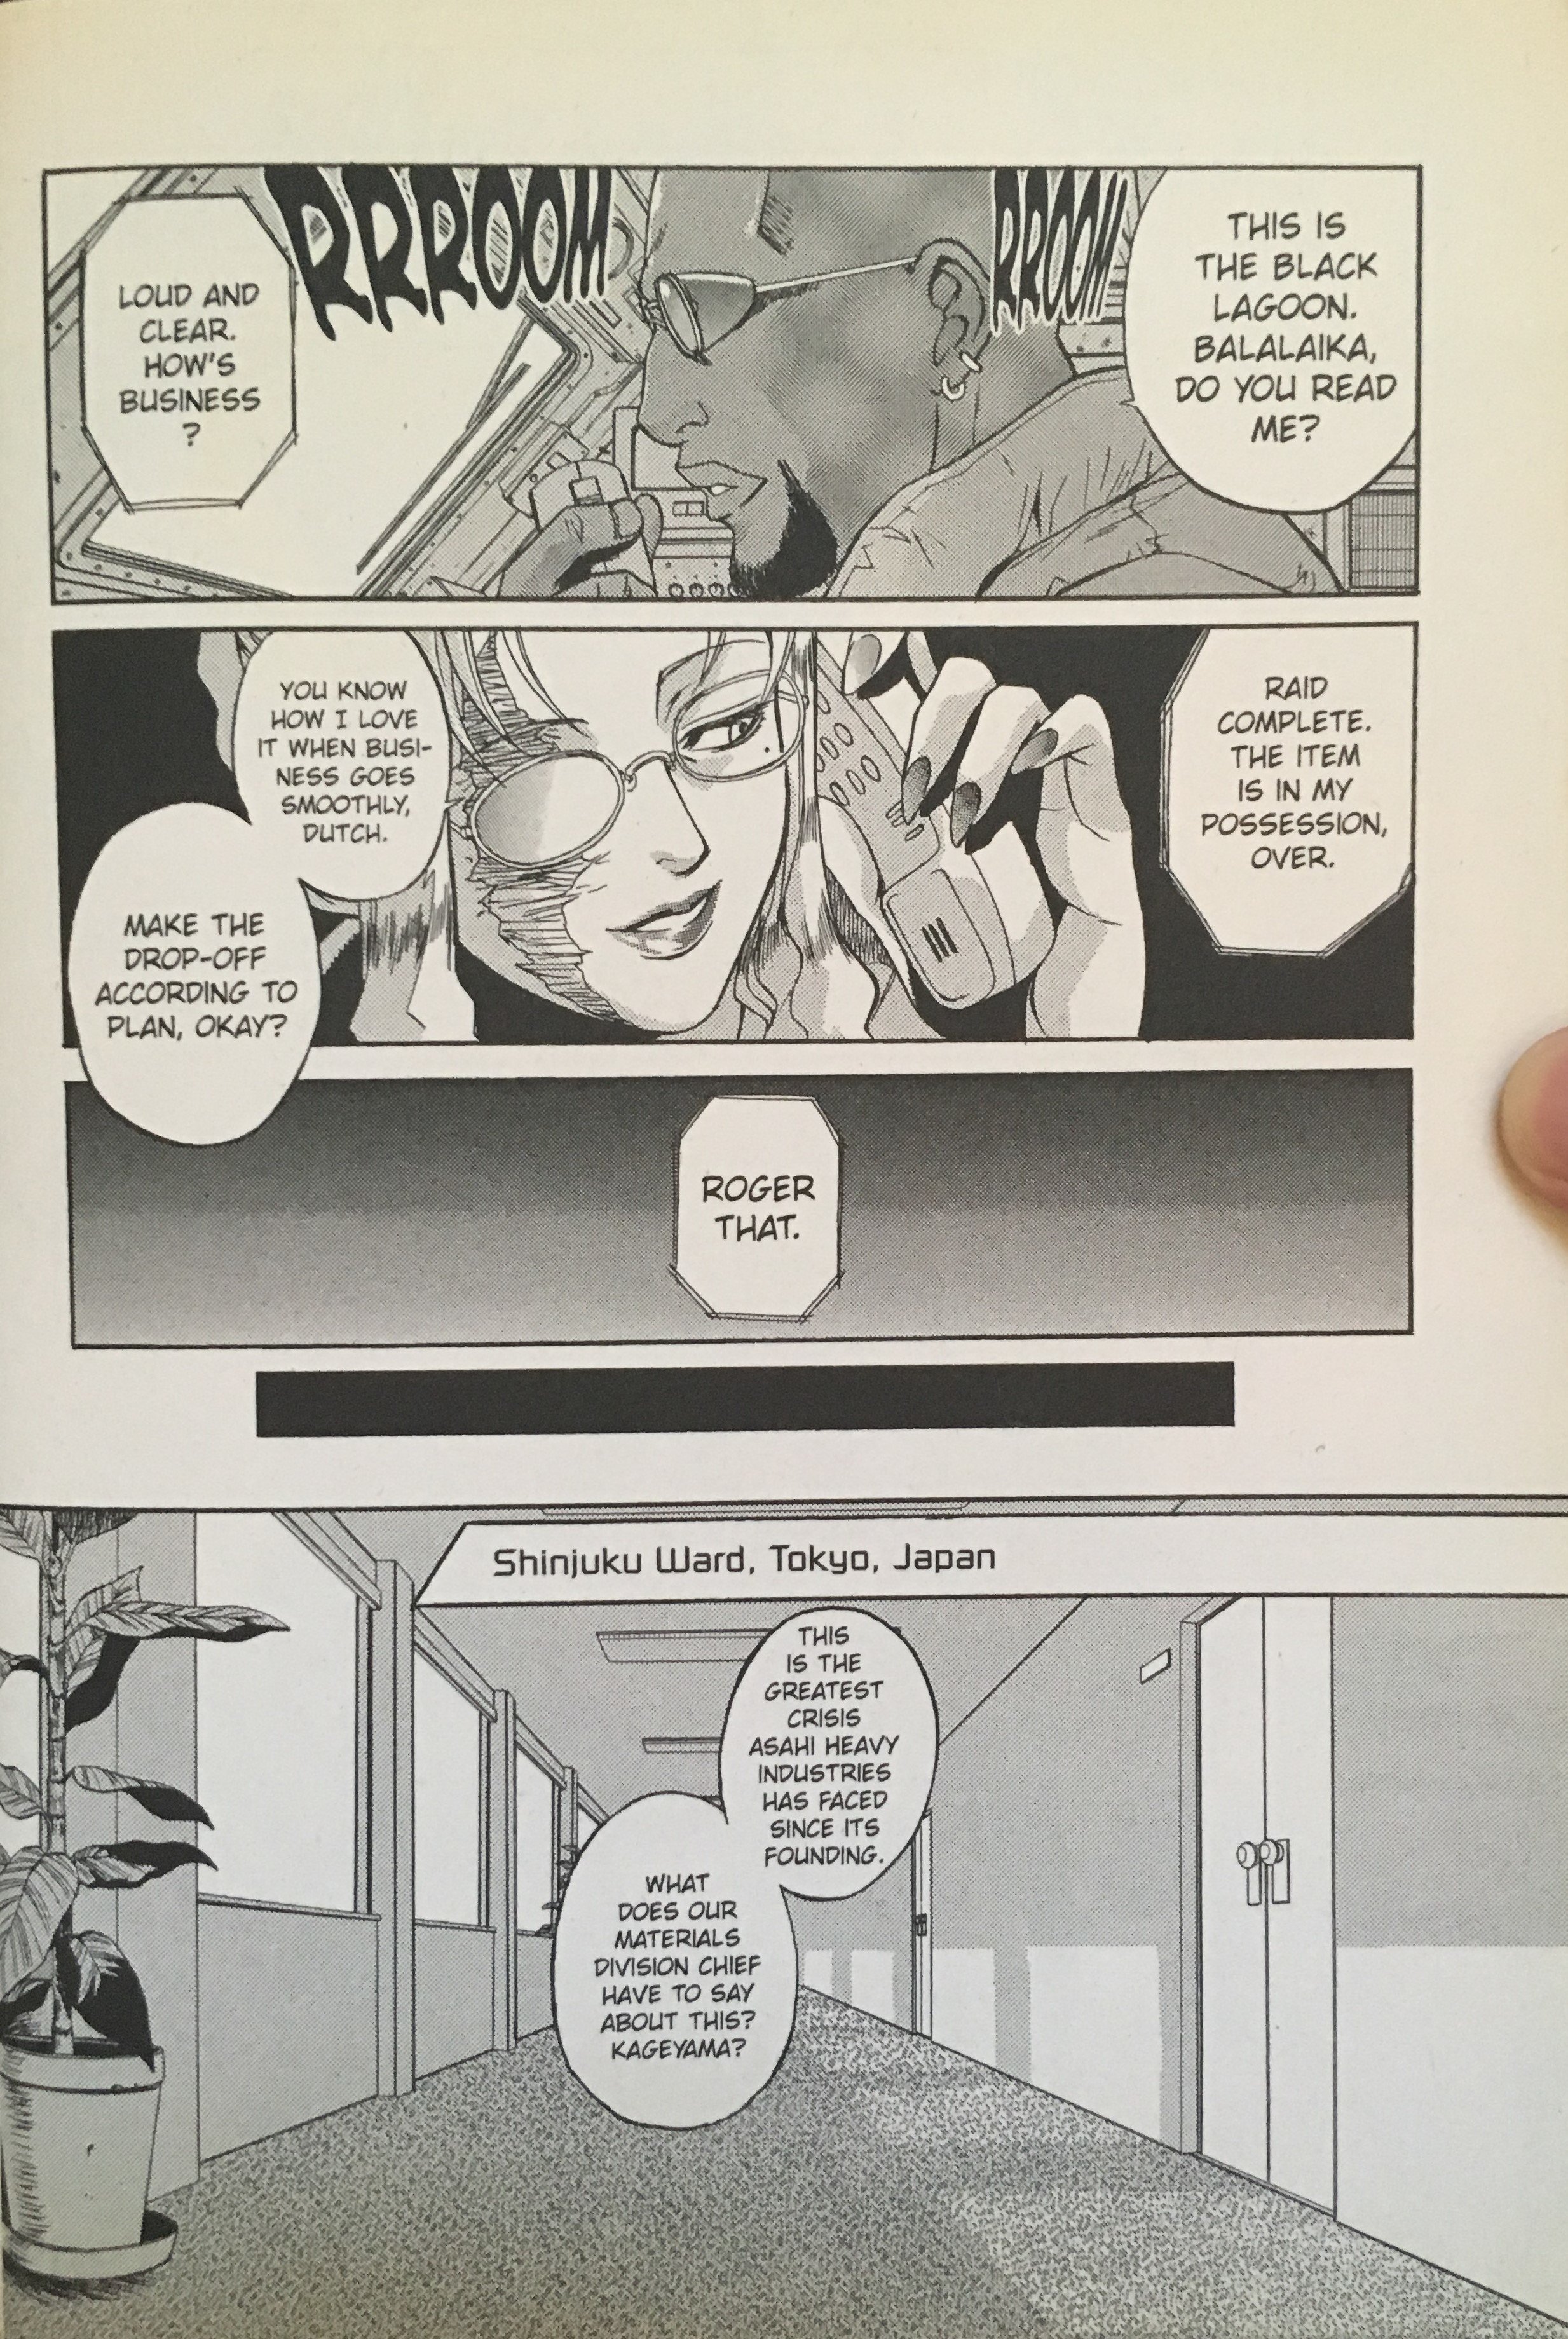 Manga で英語学習５ページ目 たかぎ Note